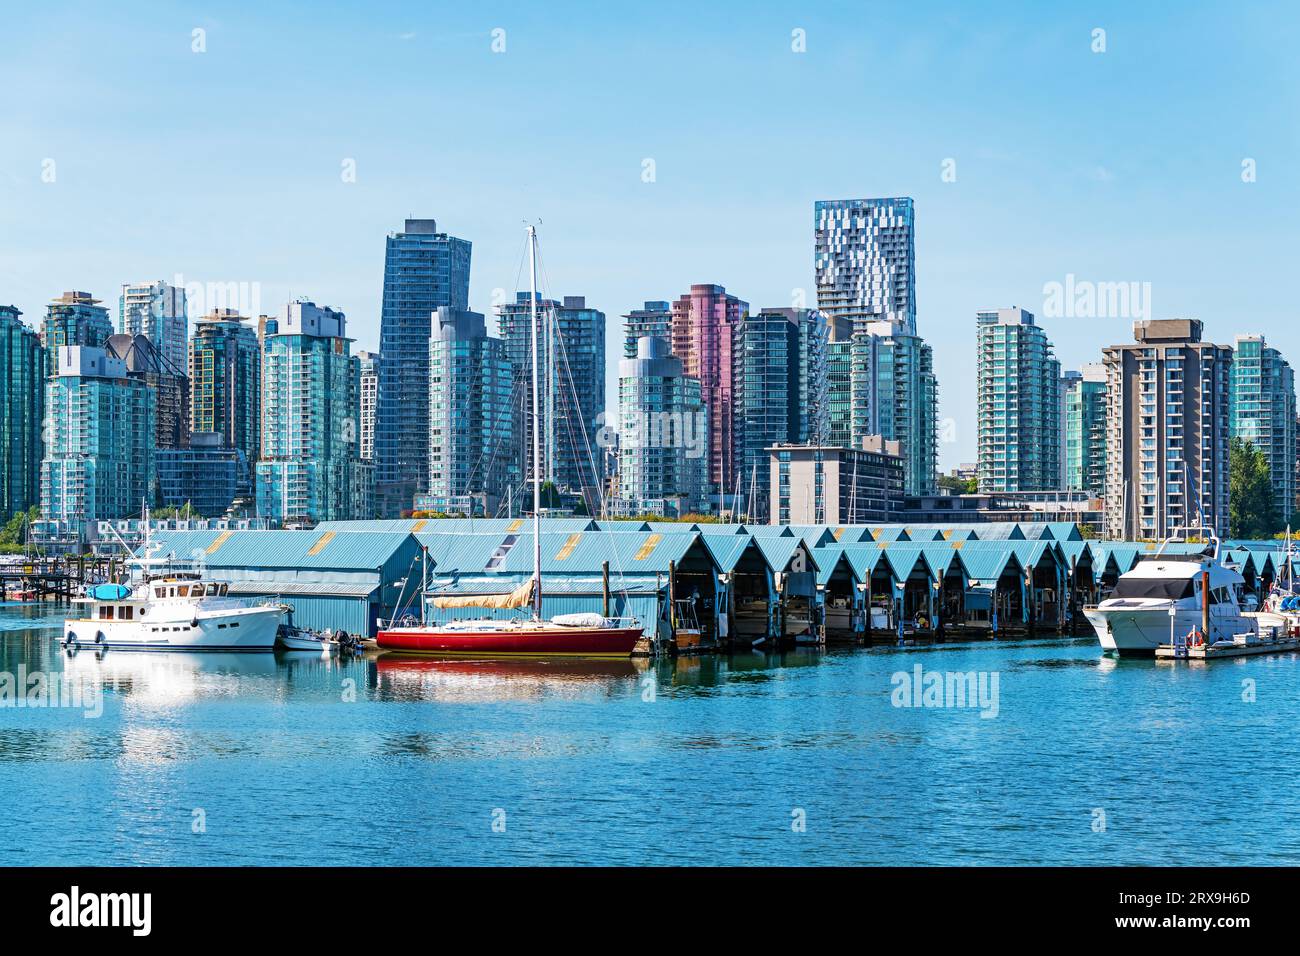 Yachtclub mit überdachter Konstruktion für Schiffe, die vom Seawall des Stanley Park mit der Skyline der Innenstadt von Vancouver, Kanada, aus gesehen werden. Stockfoto